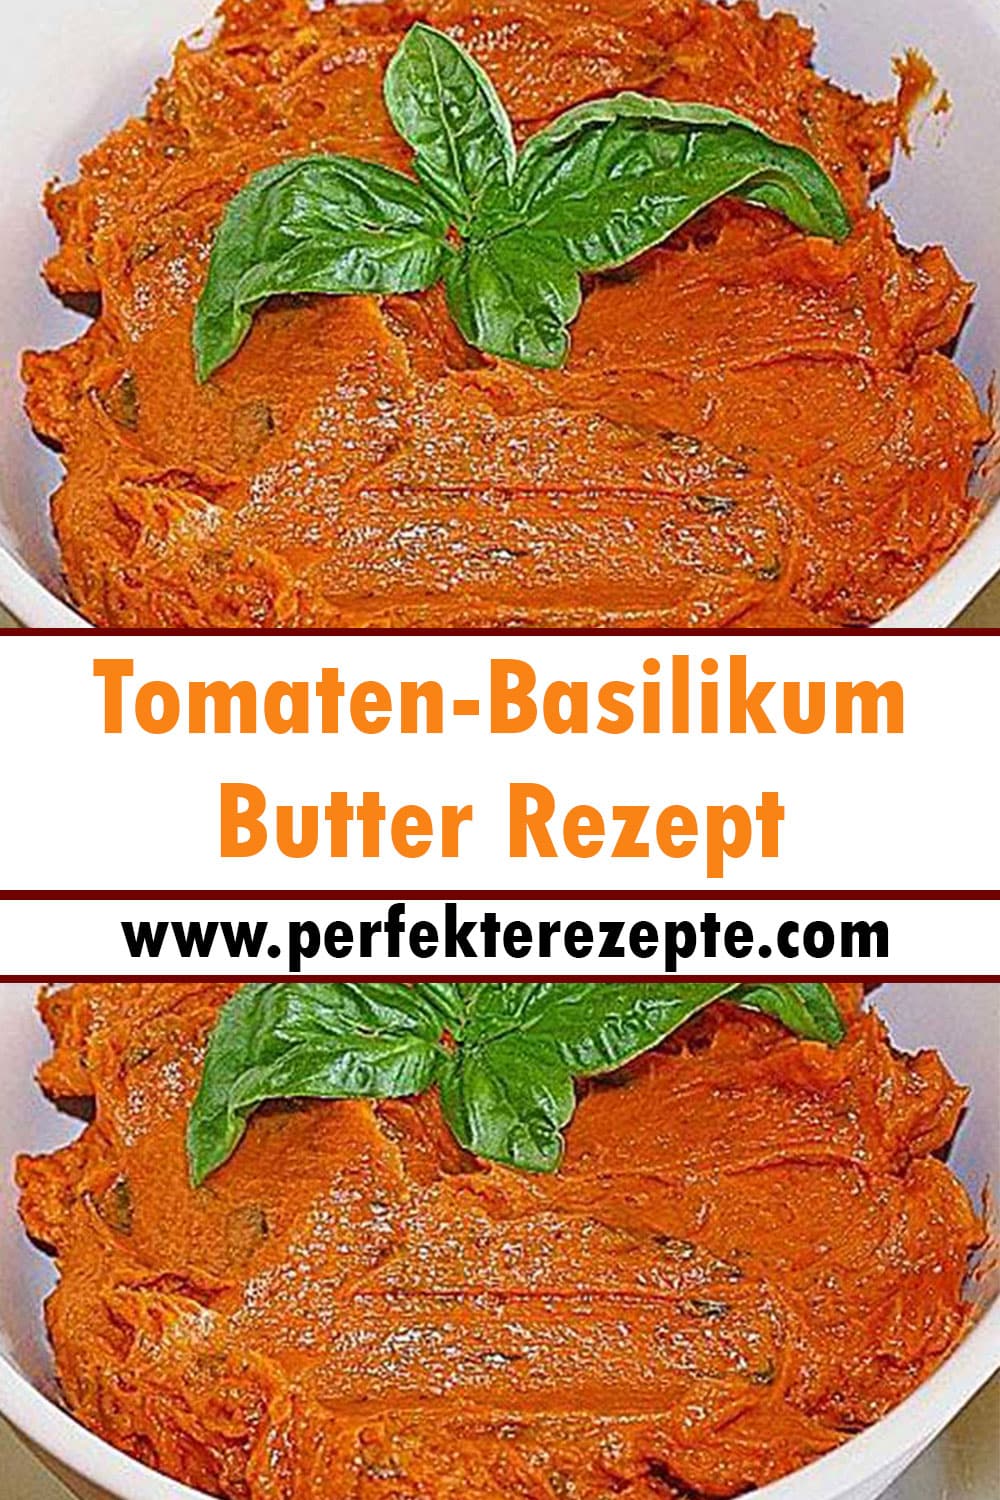 Tomaten-Basilikum-Butter Rezept